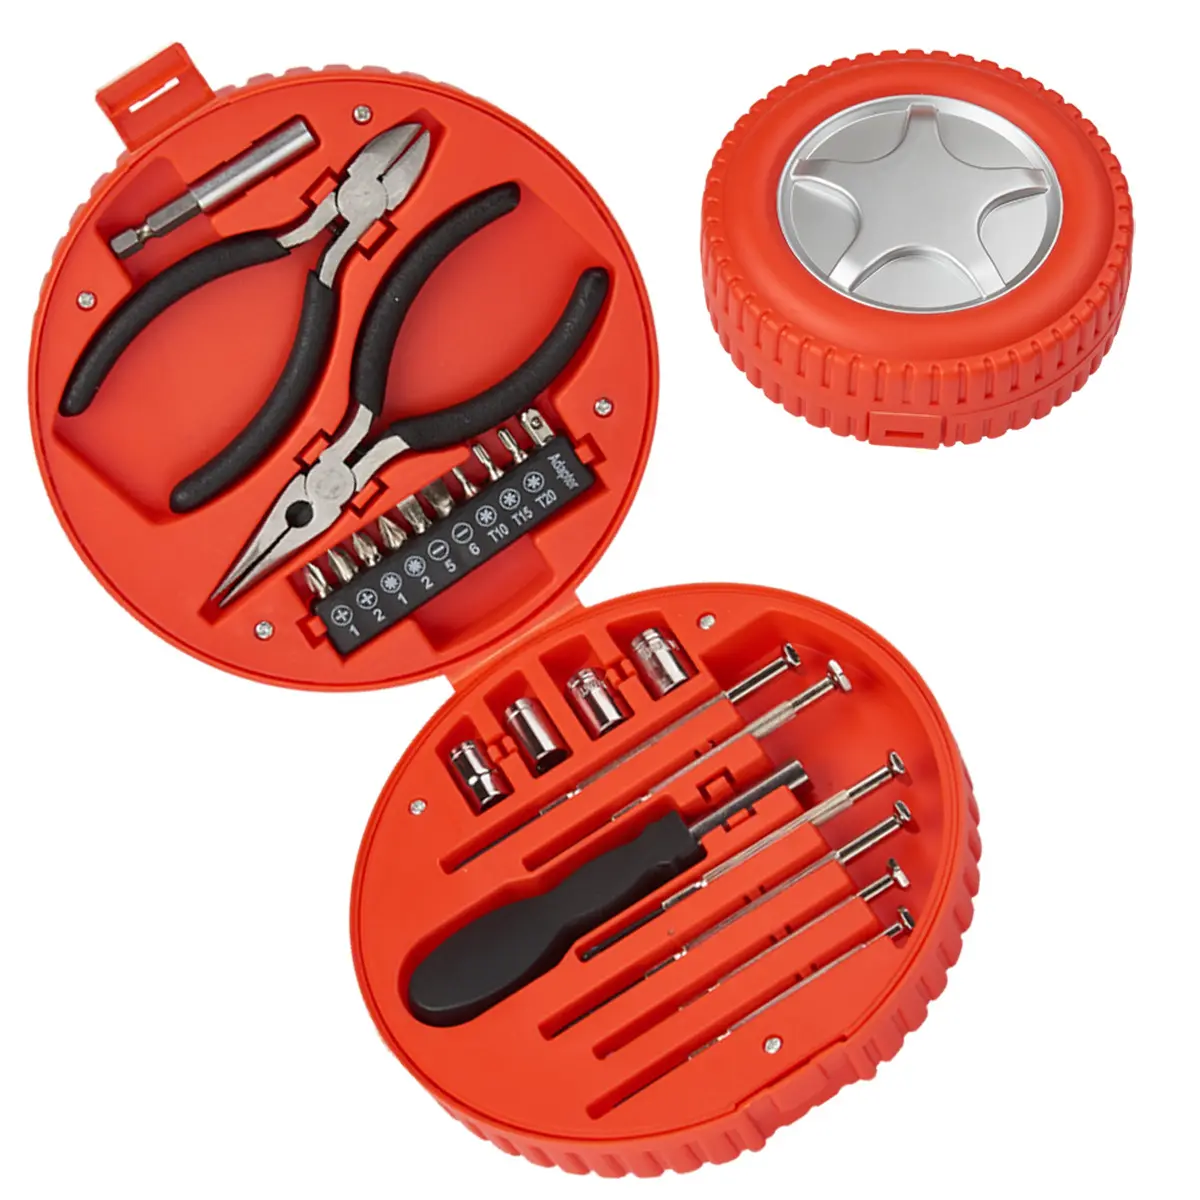 Juego de herramientas con forma de neumático de 24 piezas para regalo de promoción en tienda de herramientas o mercado